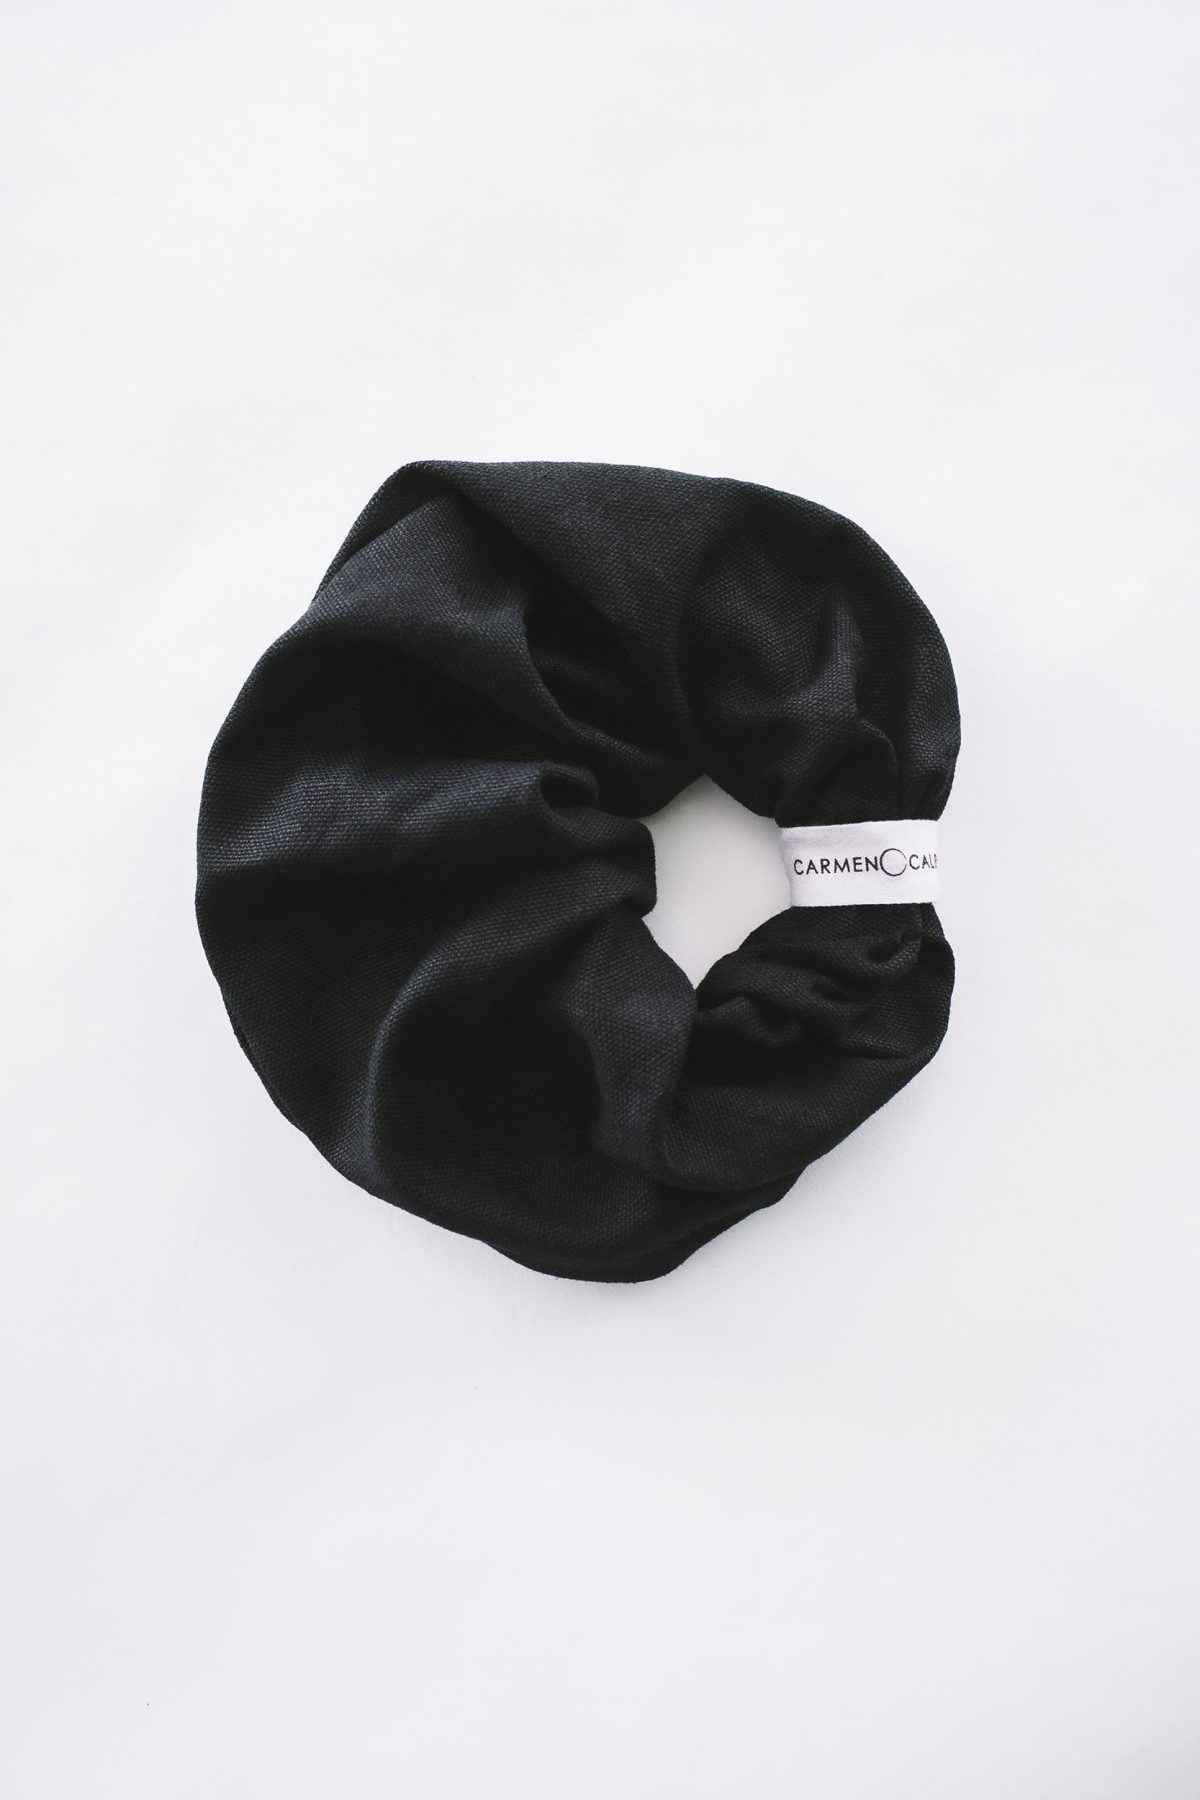 Black organic hemp and cotton hair scrunchie by Carmen Calburean